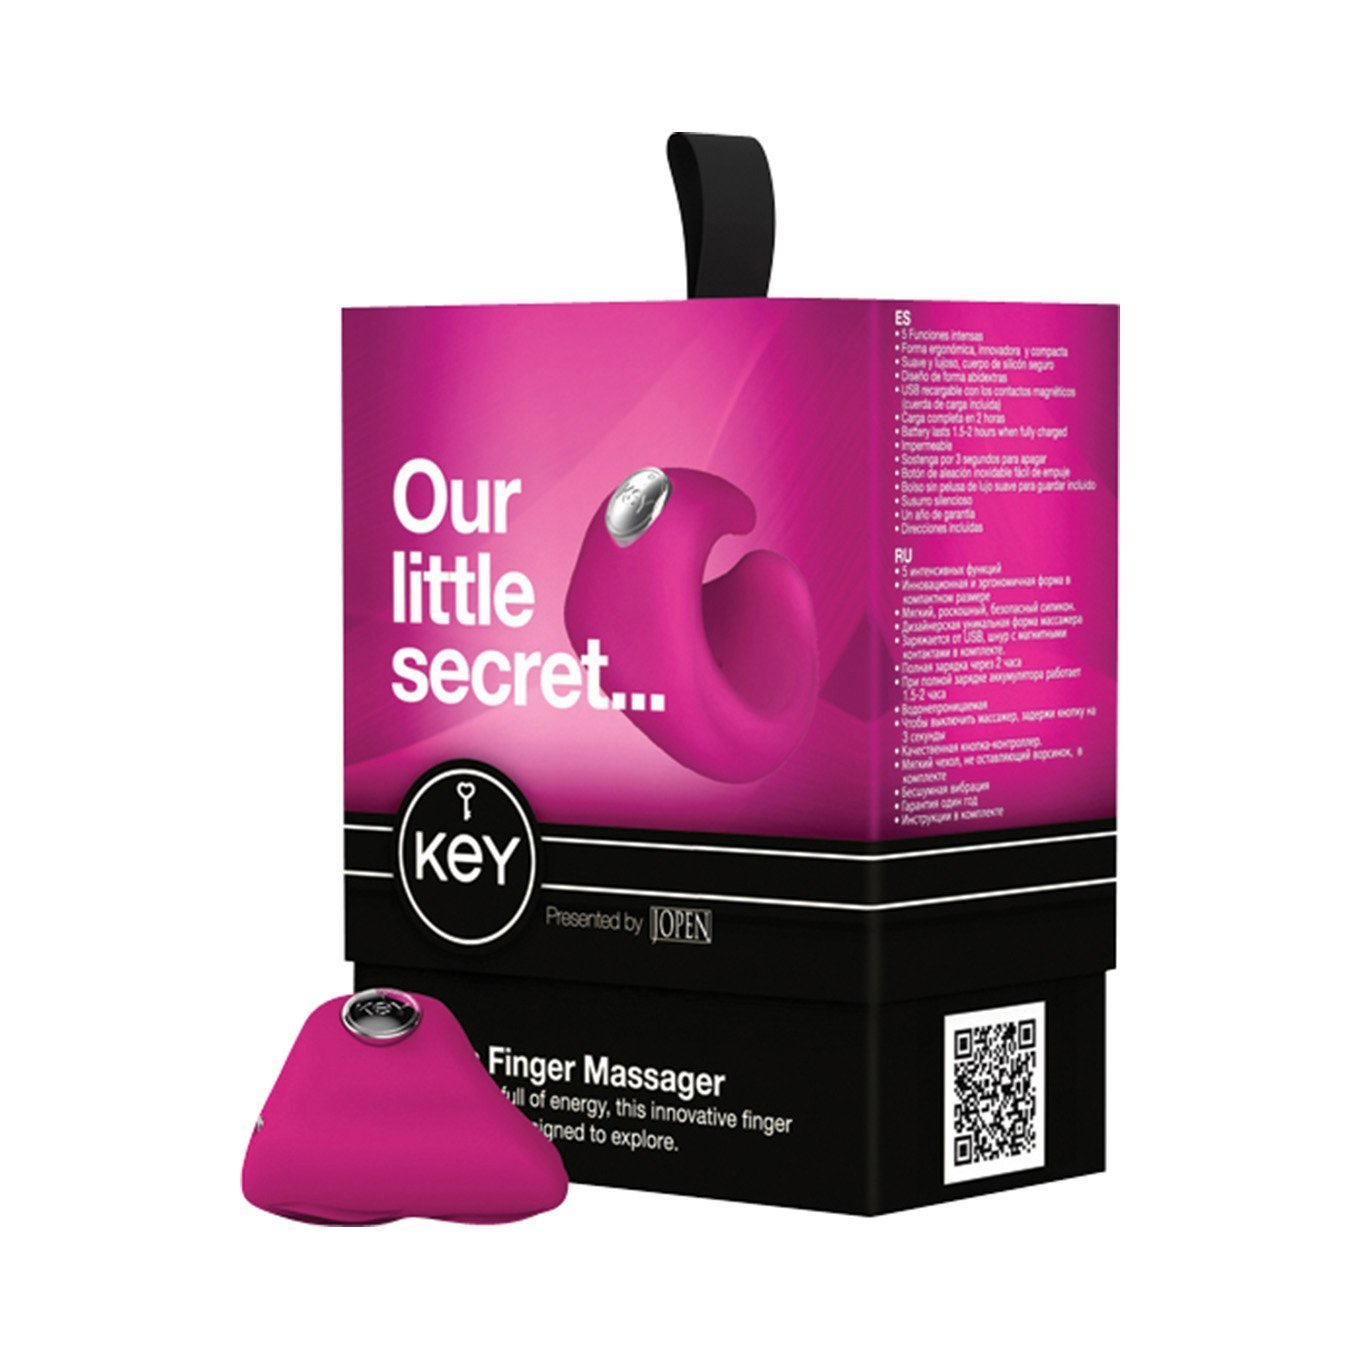 Jopen - Key Pyxis Finger Massager (Pink) -  Clit Massager (Vibration) Rechargeable  Durio.sg